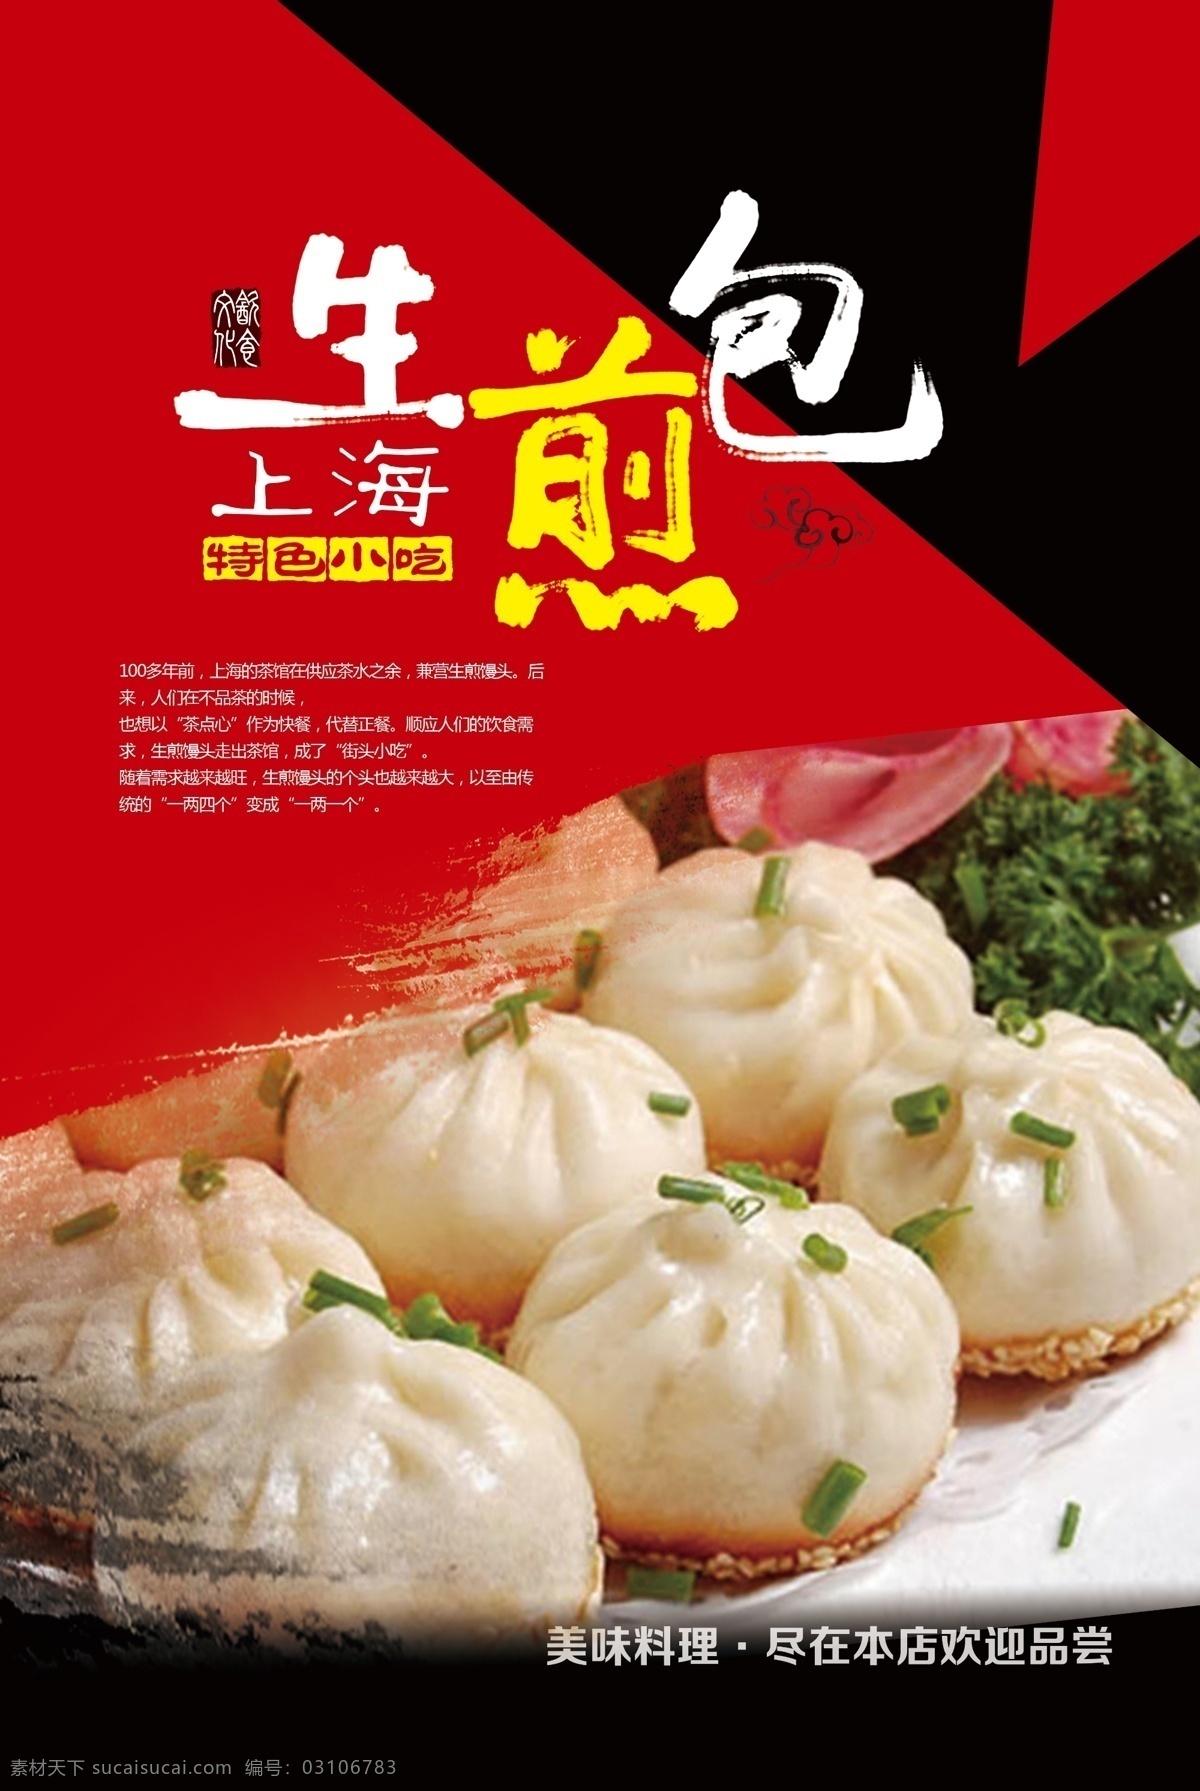 生煎包 水煎包 上海美食 饮食文化 传统饮食 海报